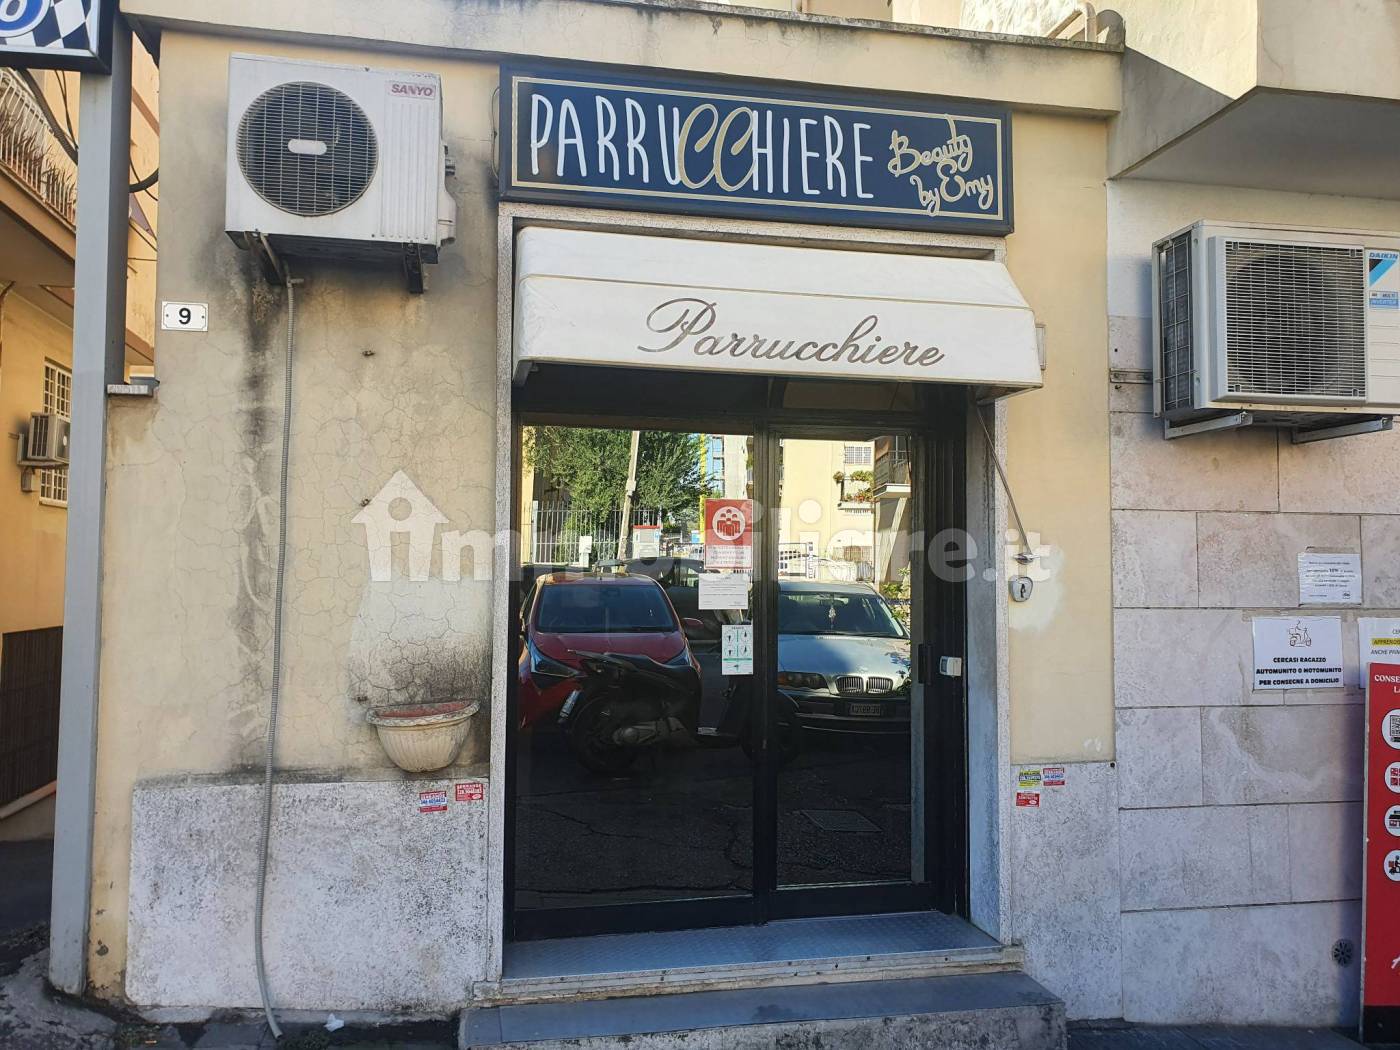 Parrucchiere - Barbiere via di Torrevecchia 9, Roma, Rif. 98259886 -  Immobiliare.it